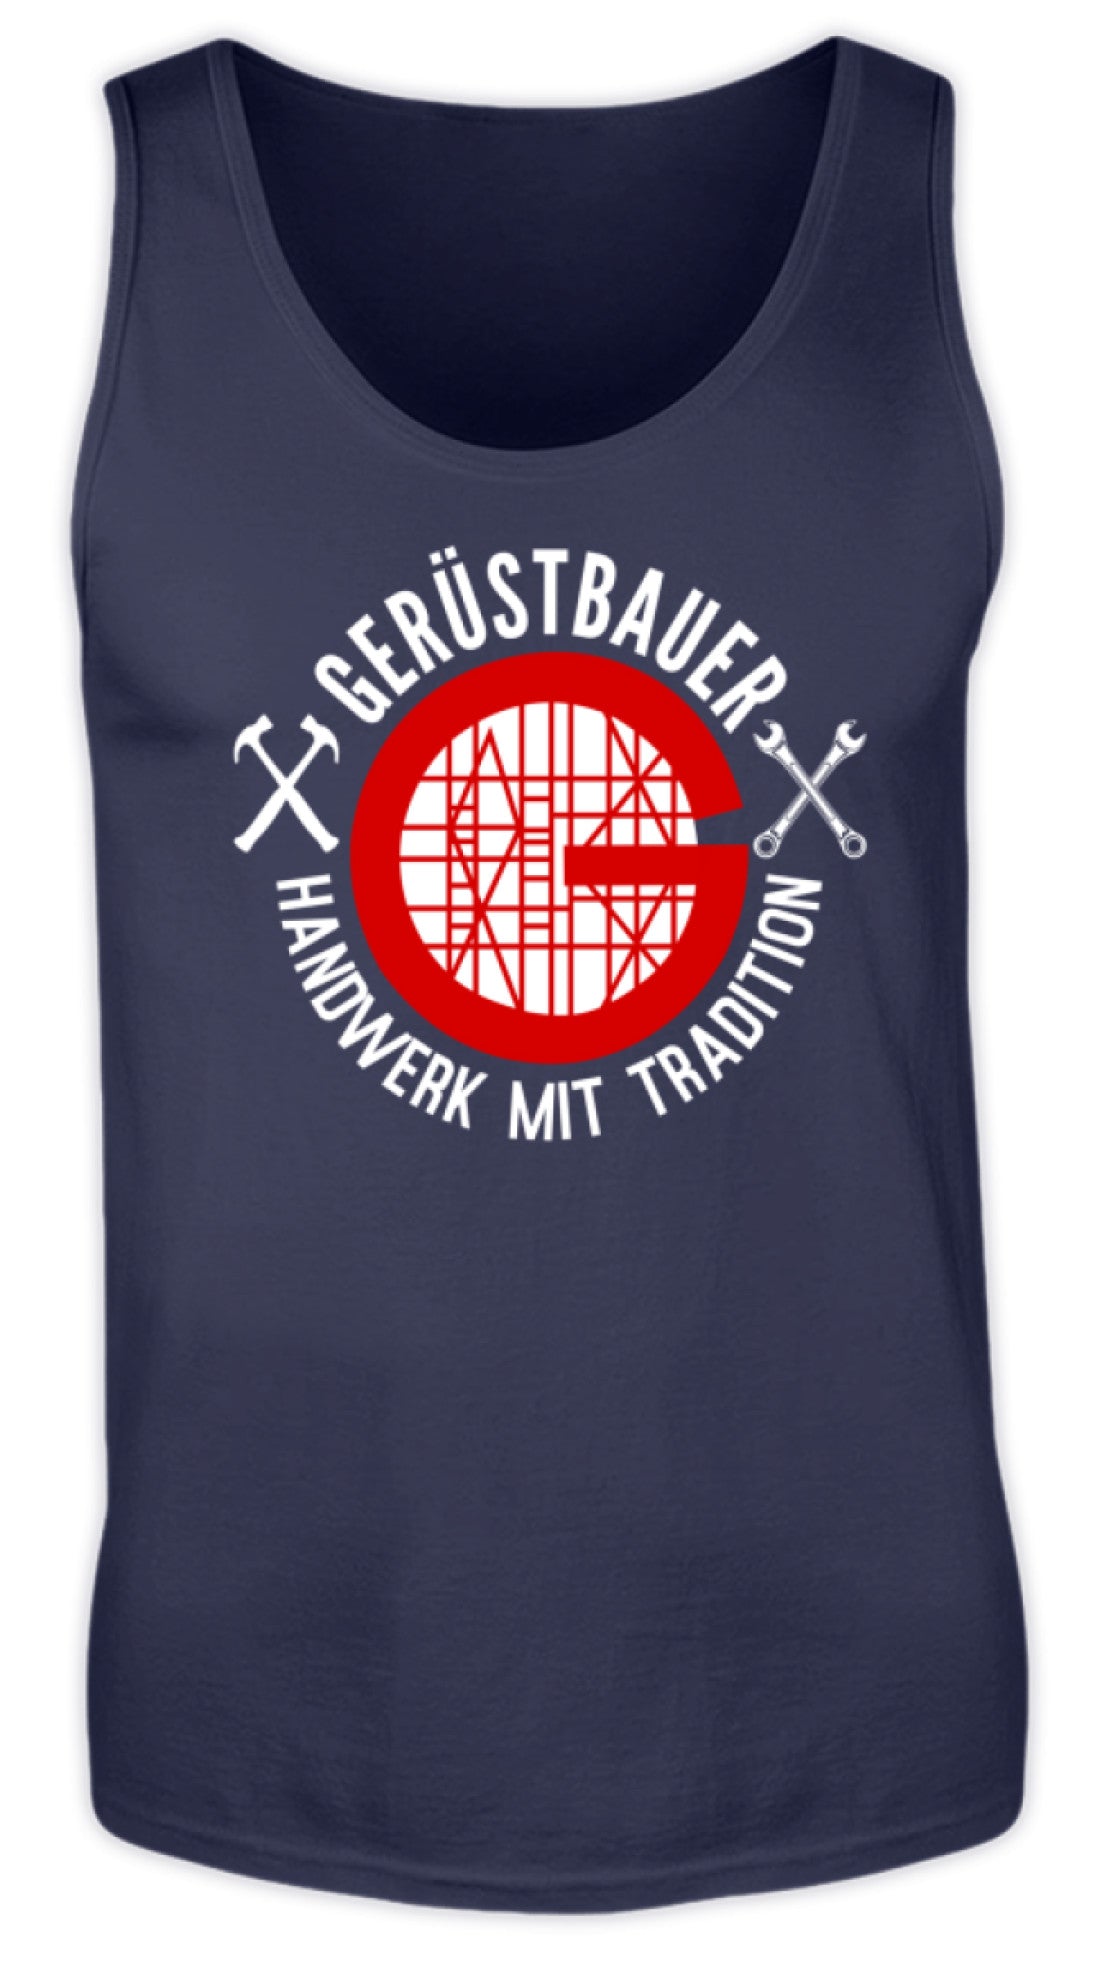 Gerüstbauer / Handwerk mit Tradition  - Herren Tanktop €19.99 Gerüstbauer - Shop >>